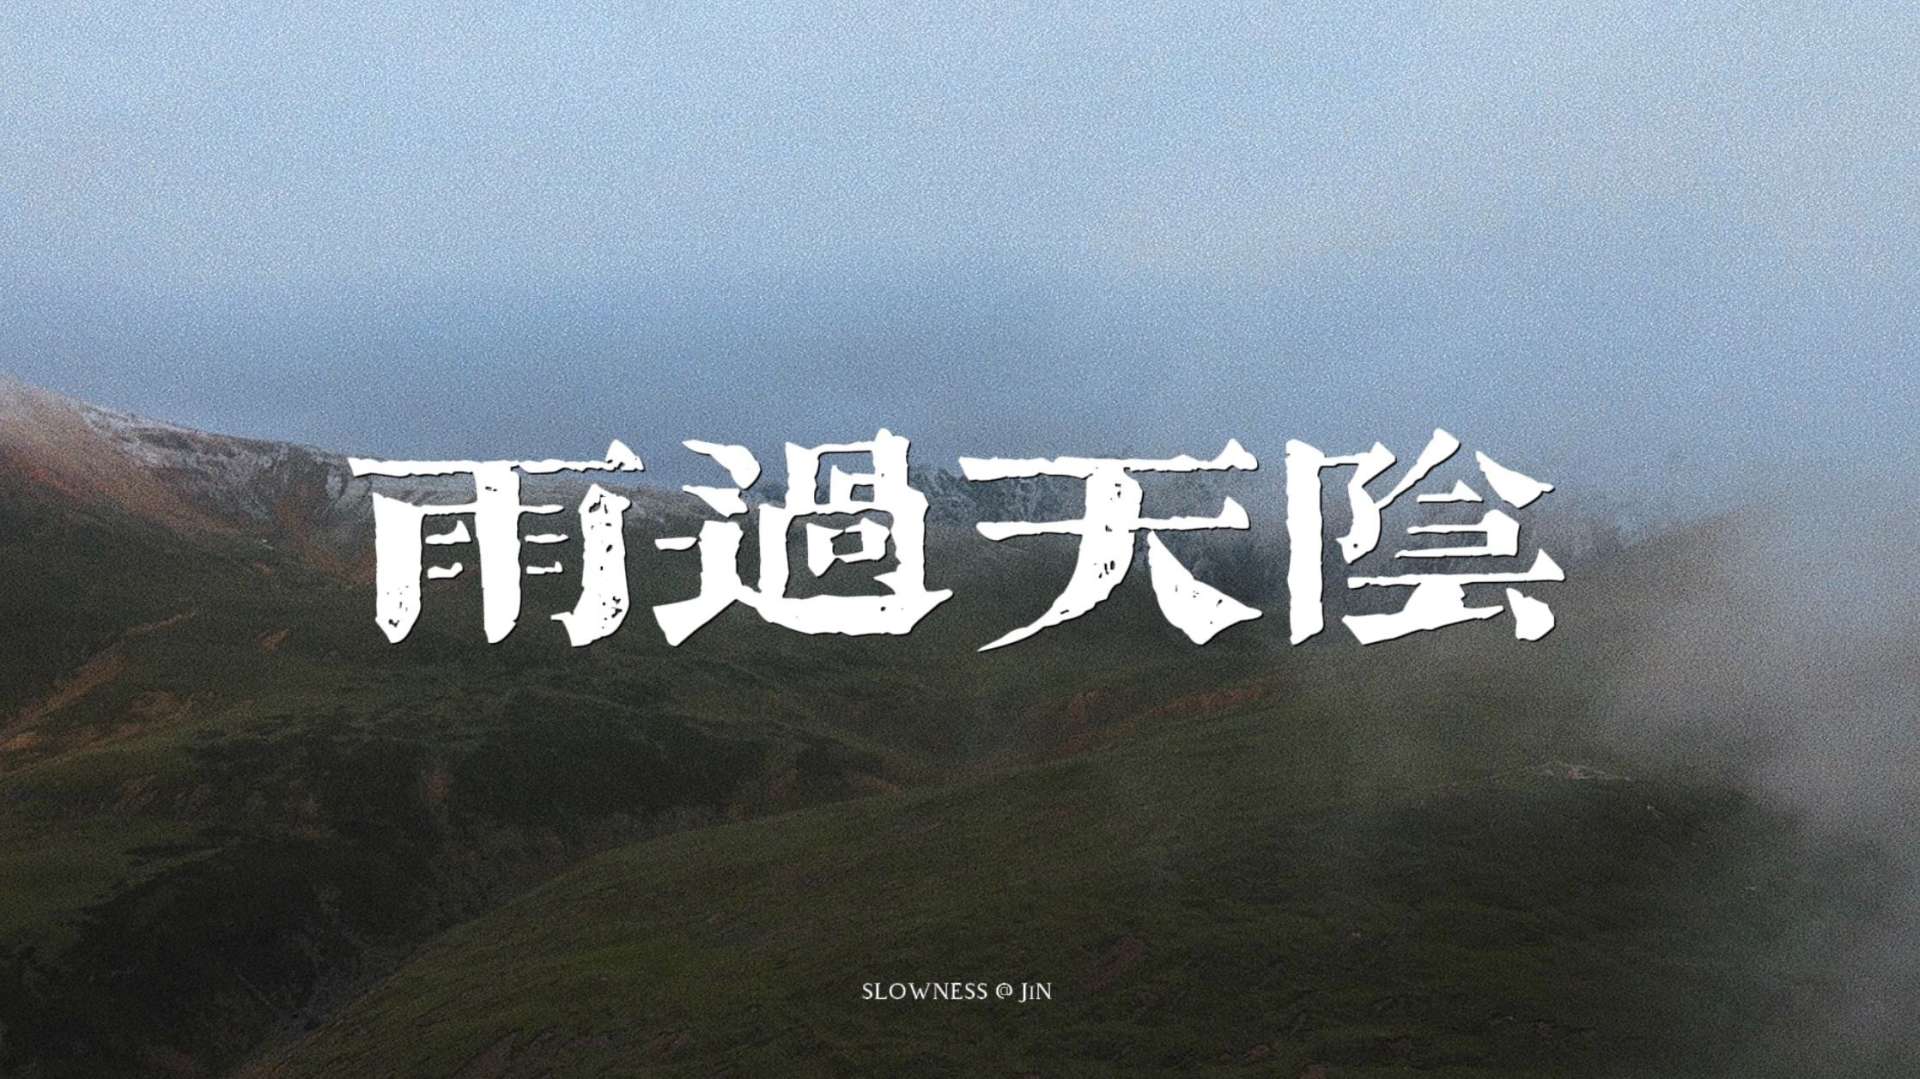 西藏紀錄片《雨过天阴》